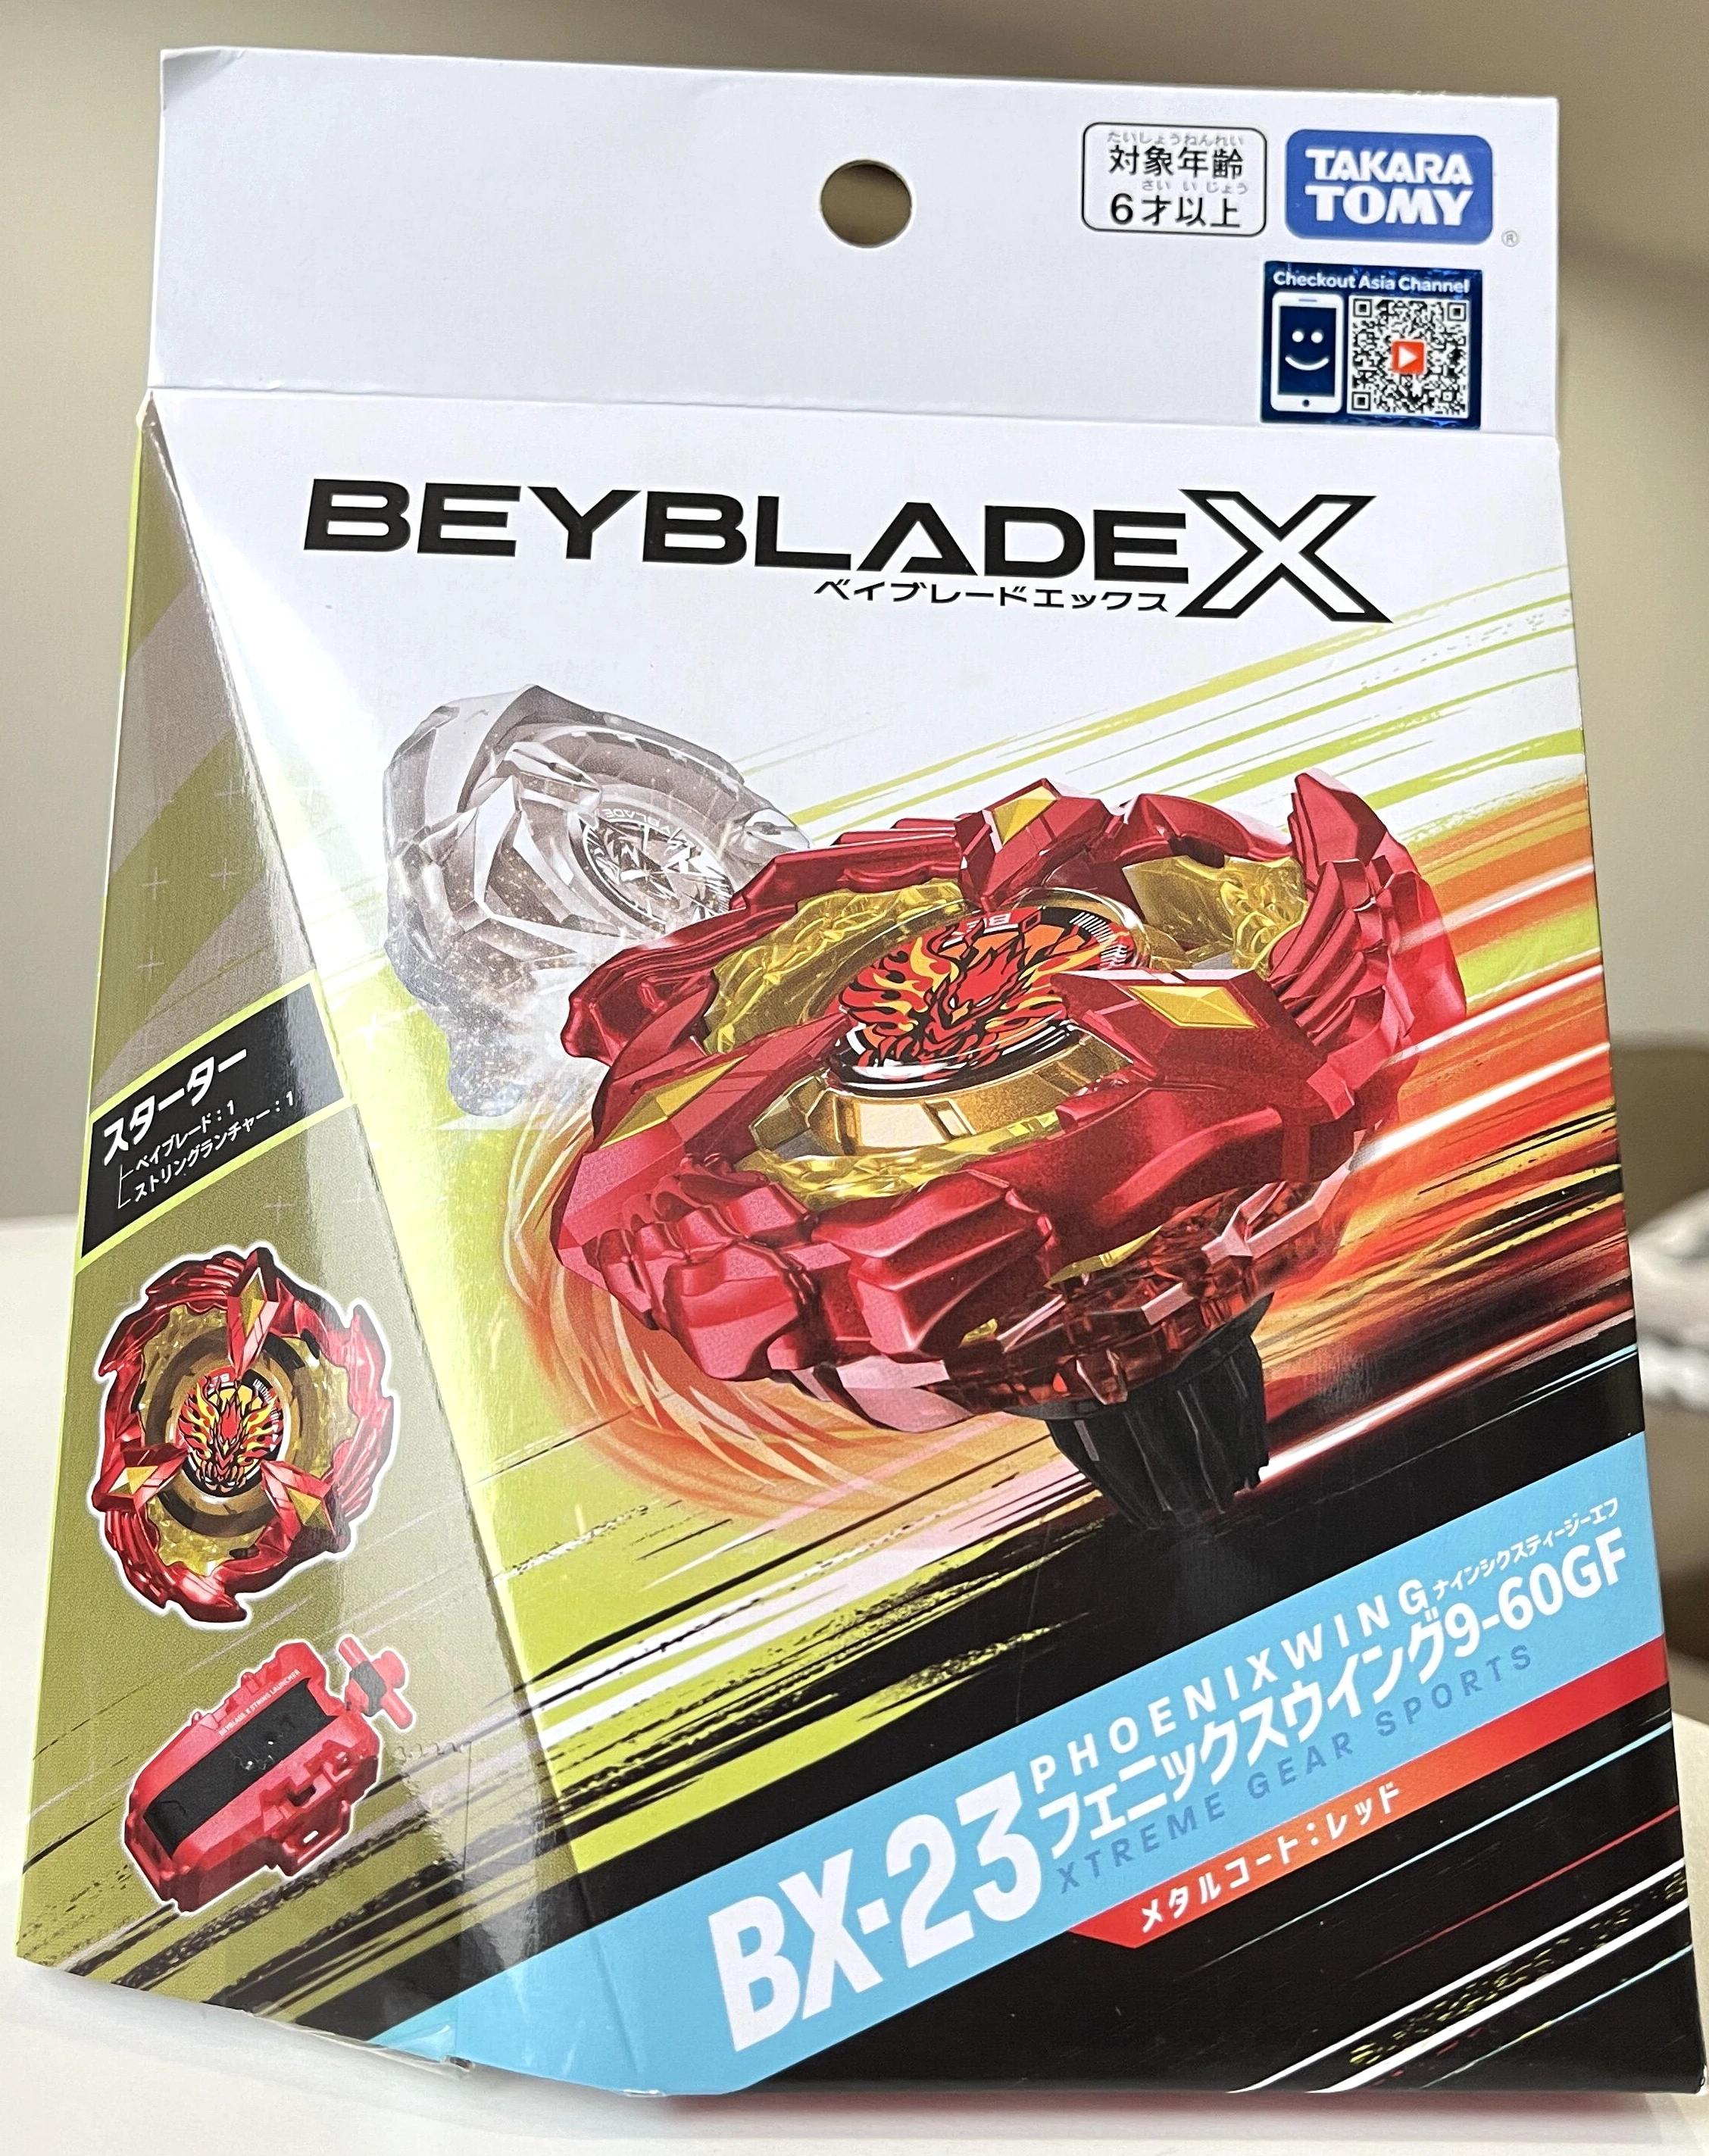 Beyblade x BX - 23 Ÿ, Ǵн  9-60GF, Takara Tomy